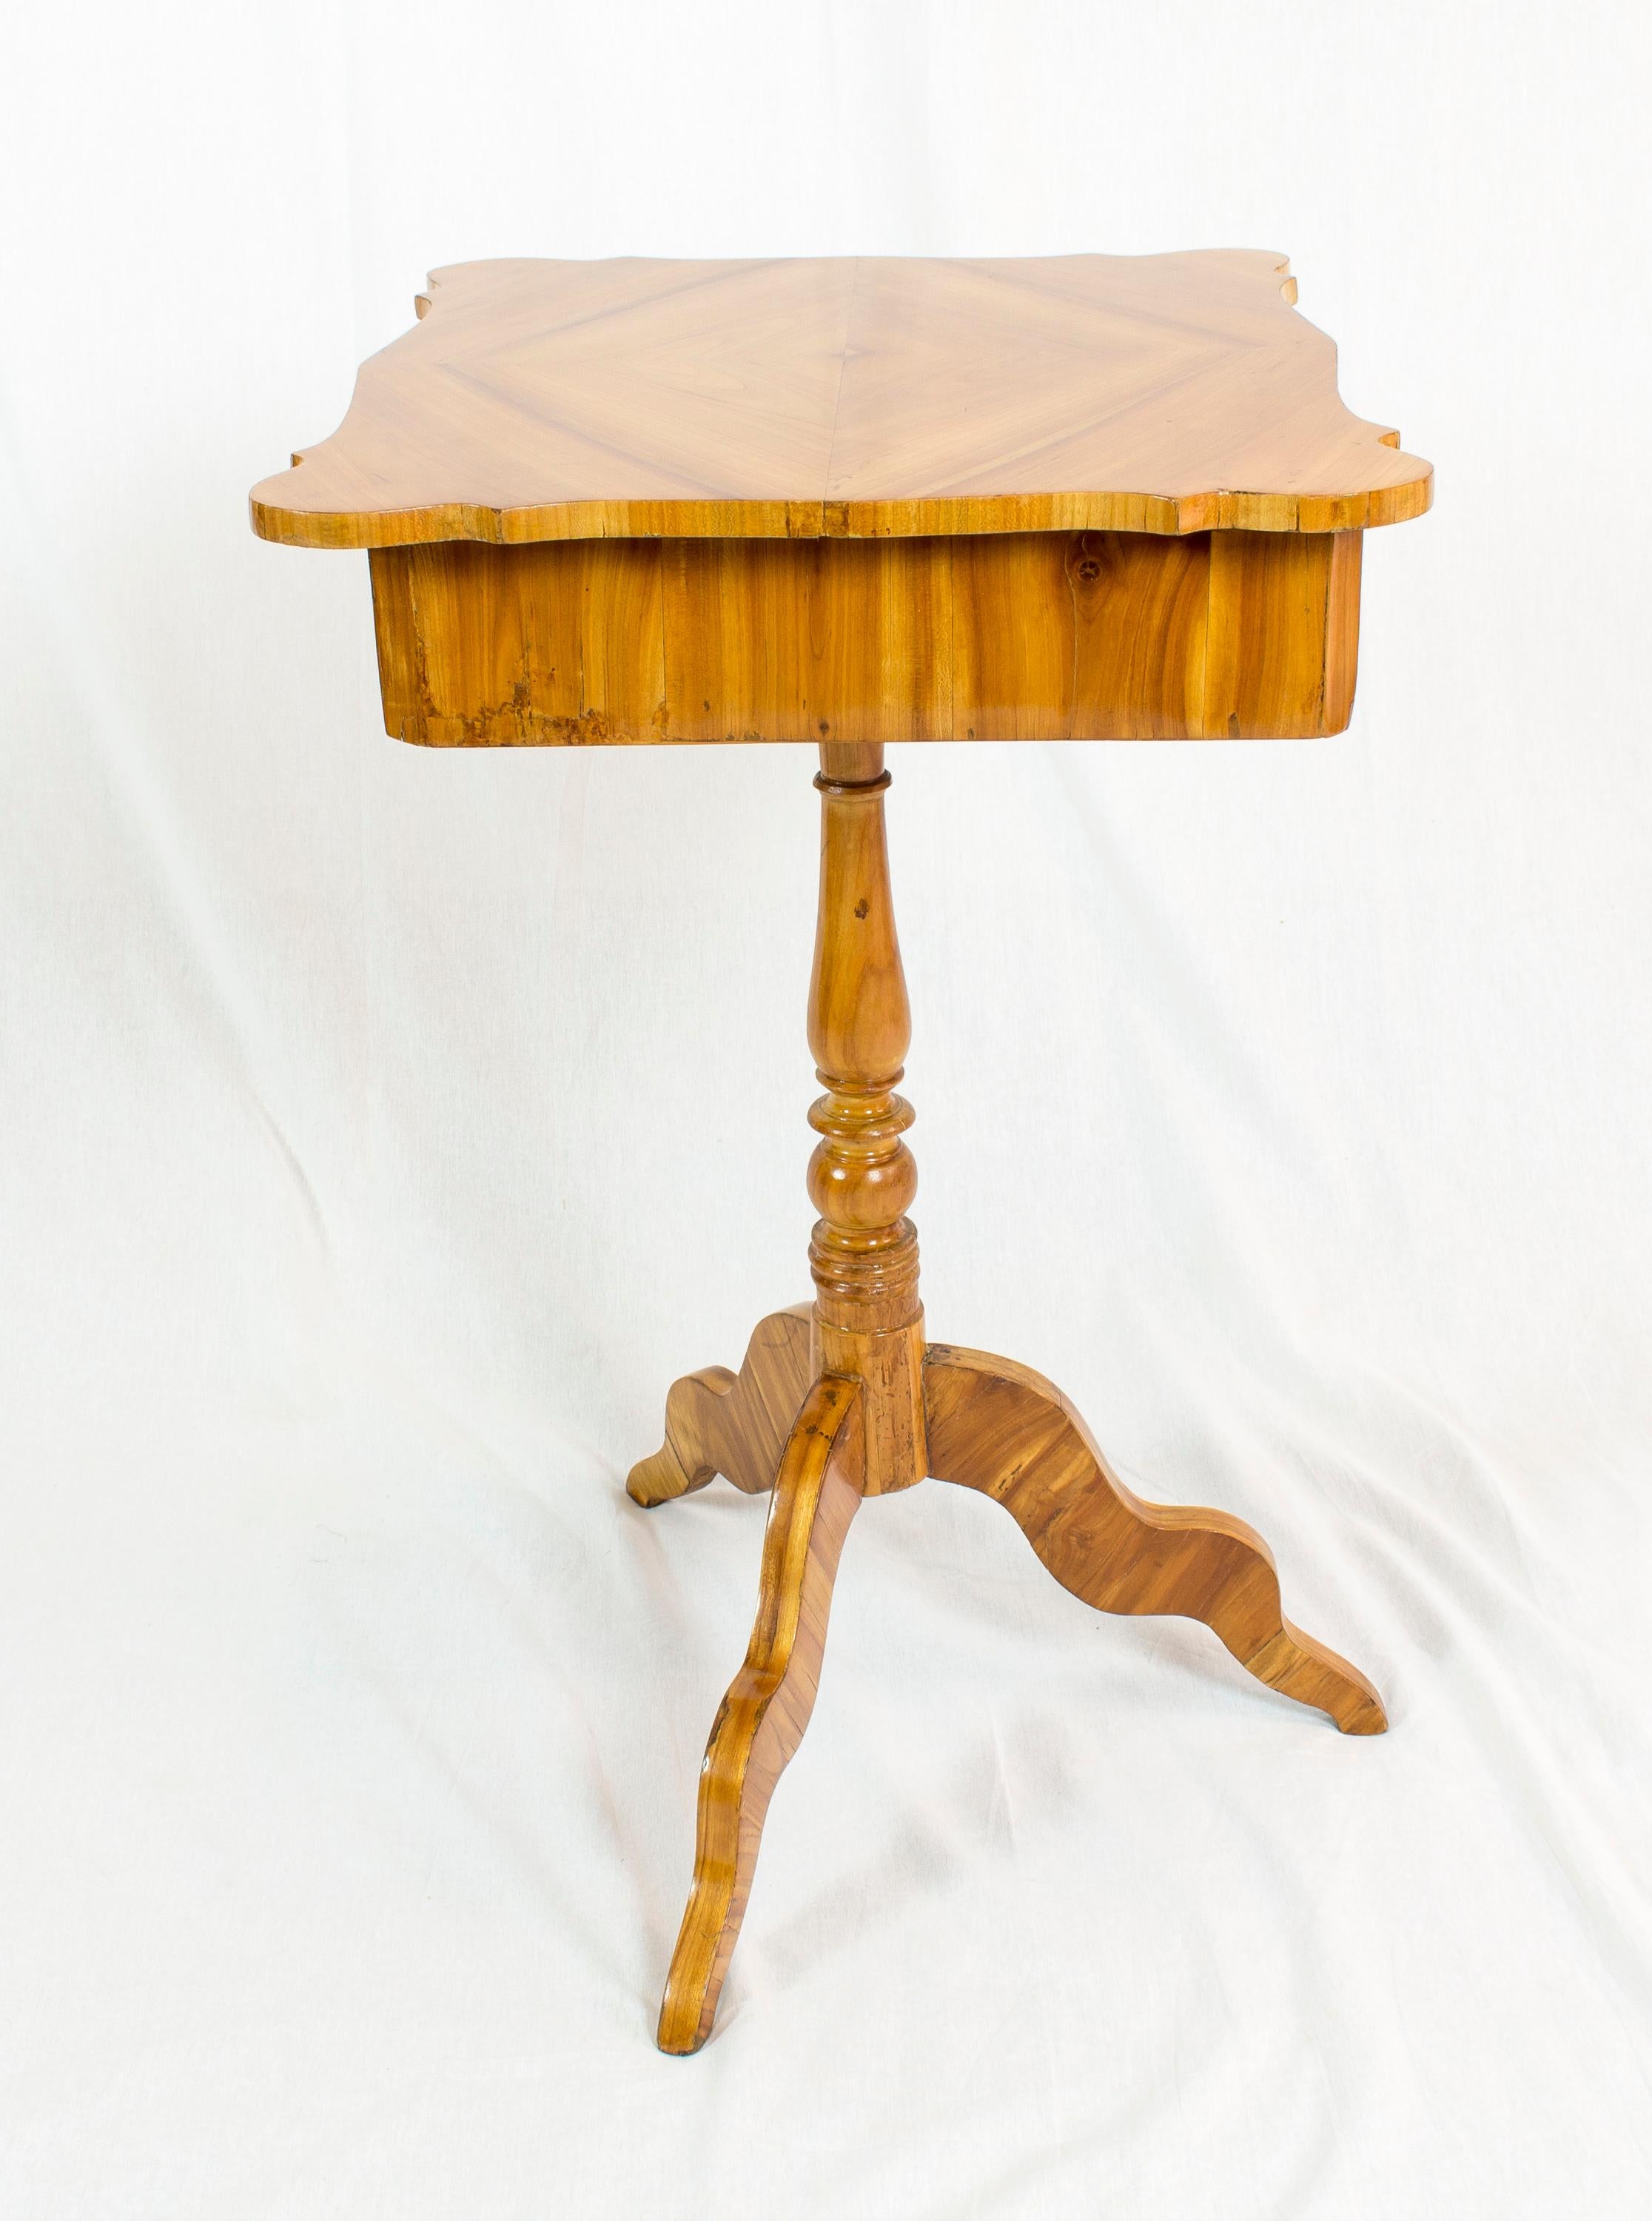 Magnifique table de couture ou d'appoint en placage de bois de cerisier sur un corps en épicéa. La table date de la période Louis Philippe / fin Biedermeier, plus précisément de l'époque, vers 1845. En très bon état restauré.